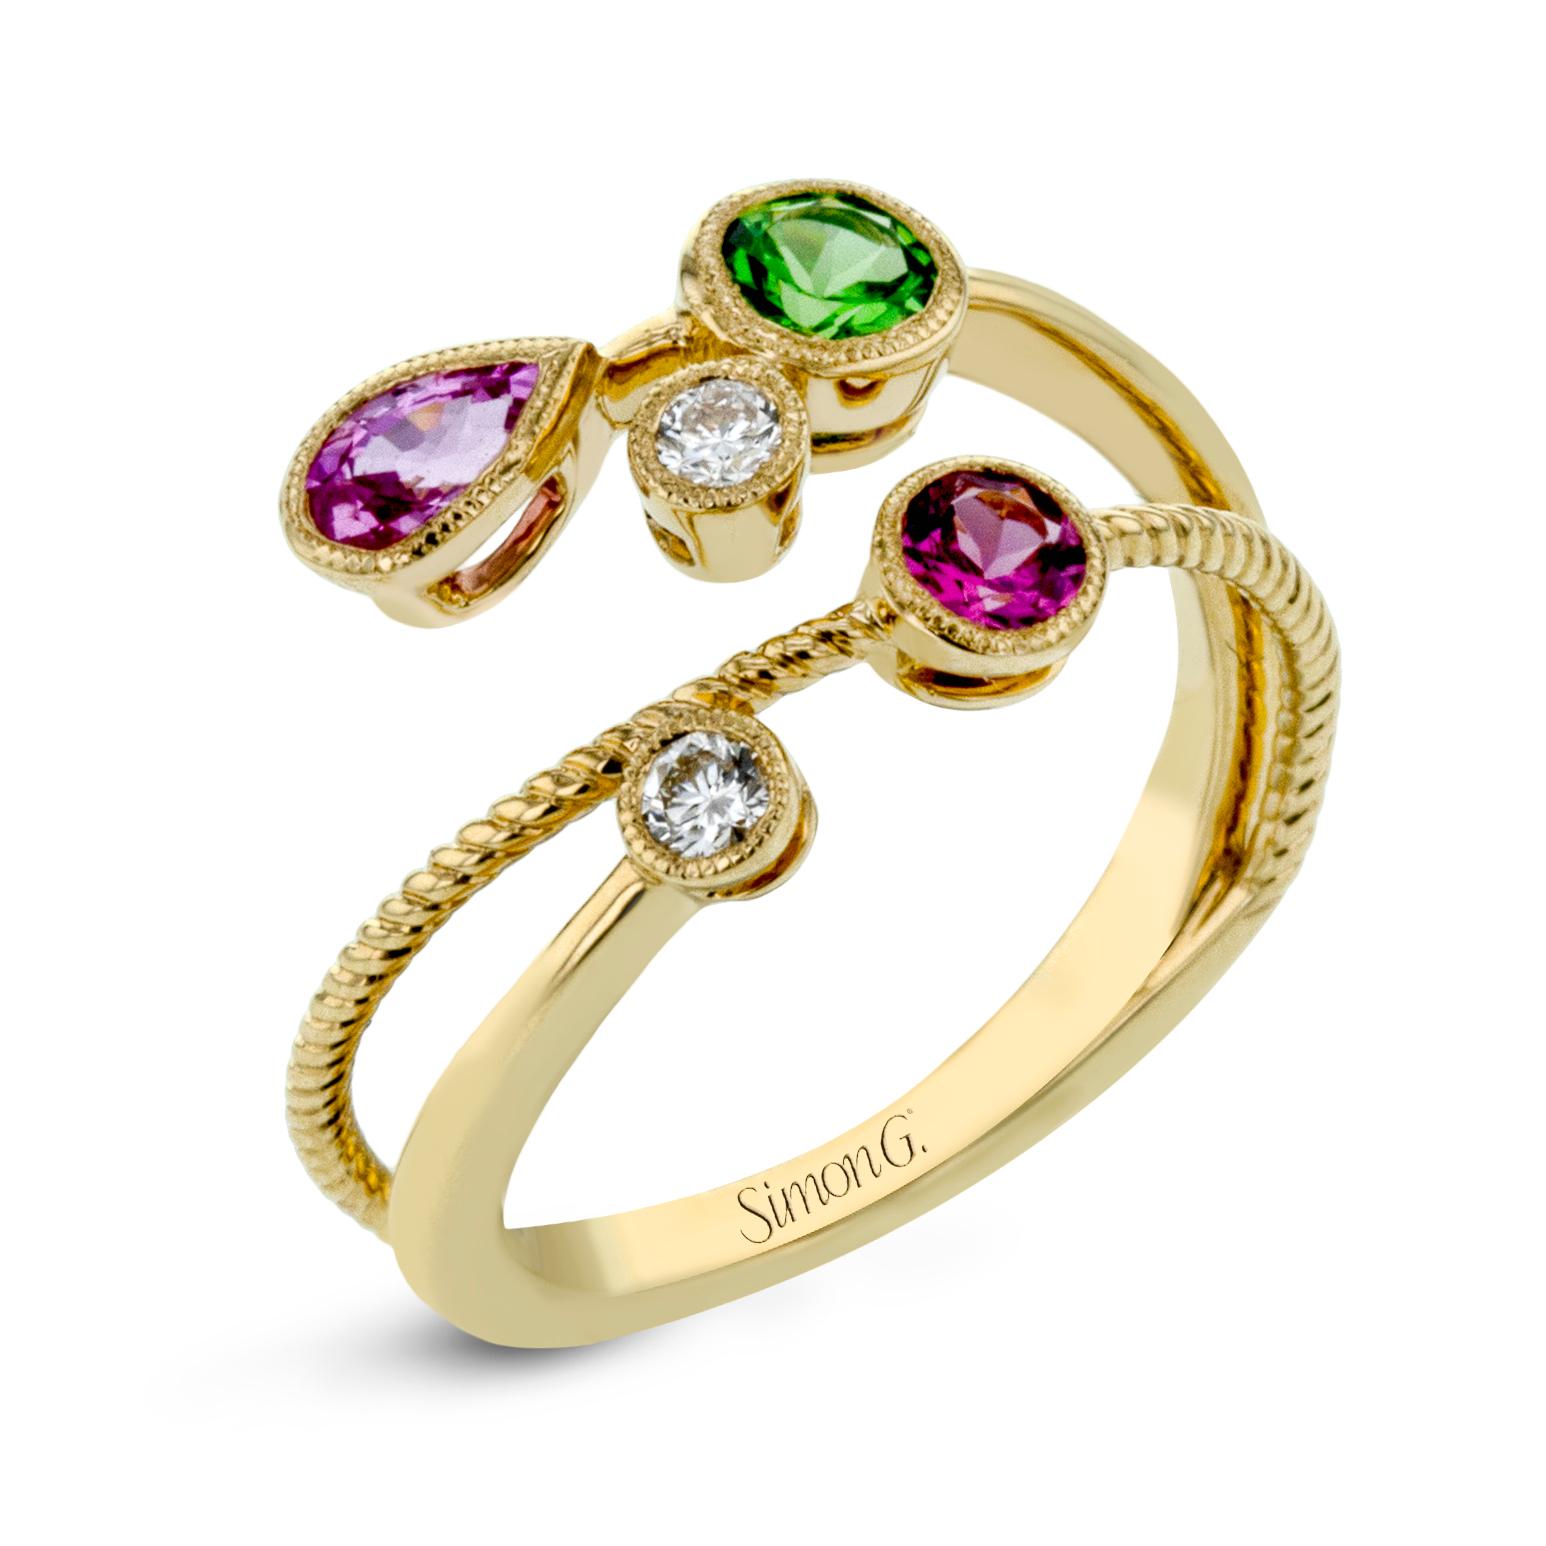 Dieser wunderschöne und einzigartige Ring von Simon G besteht aus 0,13 ct runden weißen Diamanten im Brillantschliff, einem 0,30 ct  grüner Tsavorit, ein rosa Saphir von 0,28 Karat und ein rosa Spinell von 0,20 Karat, gefasst in 18 Karat Gelbgold